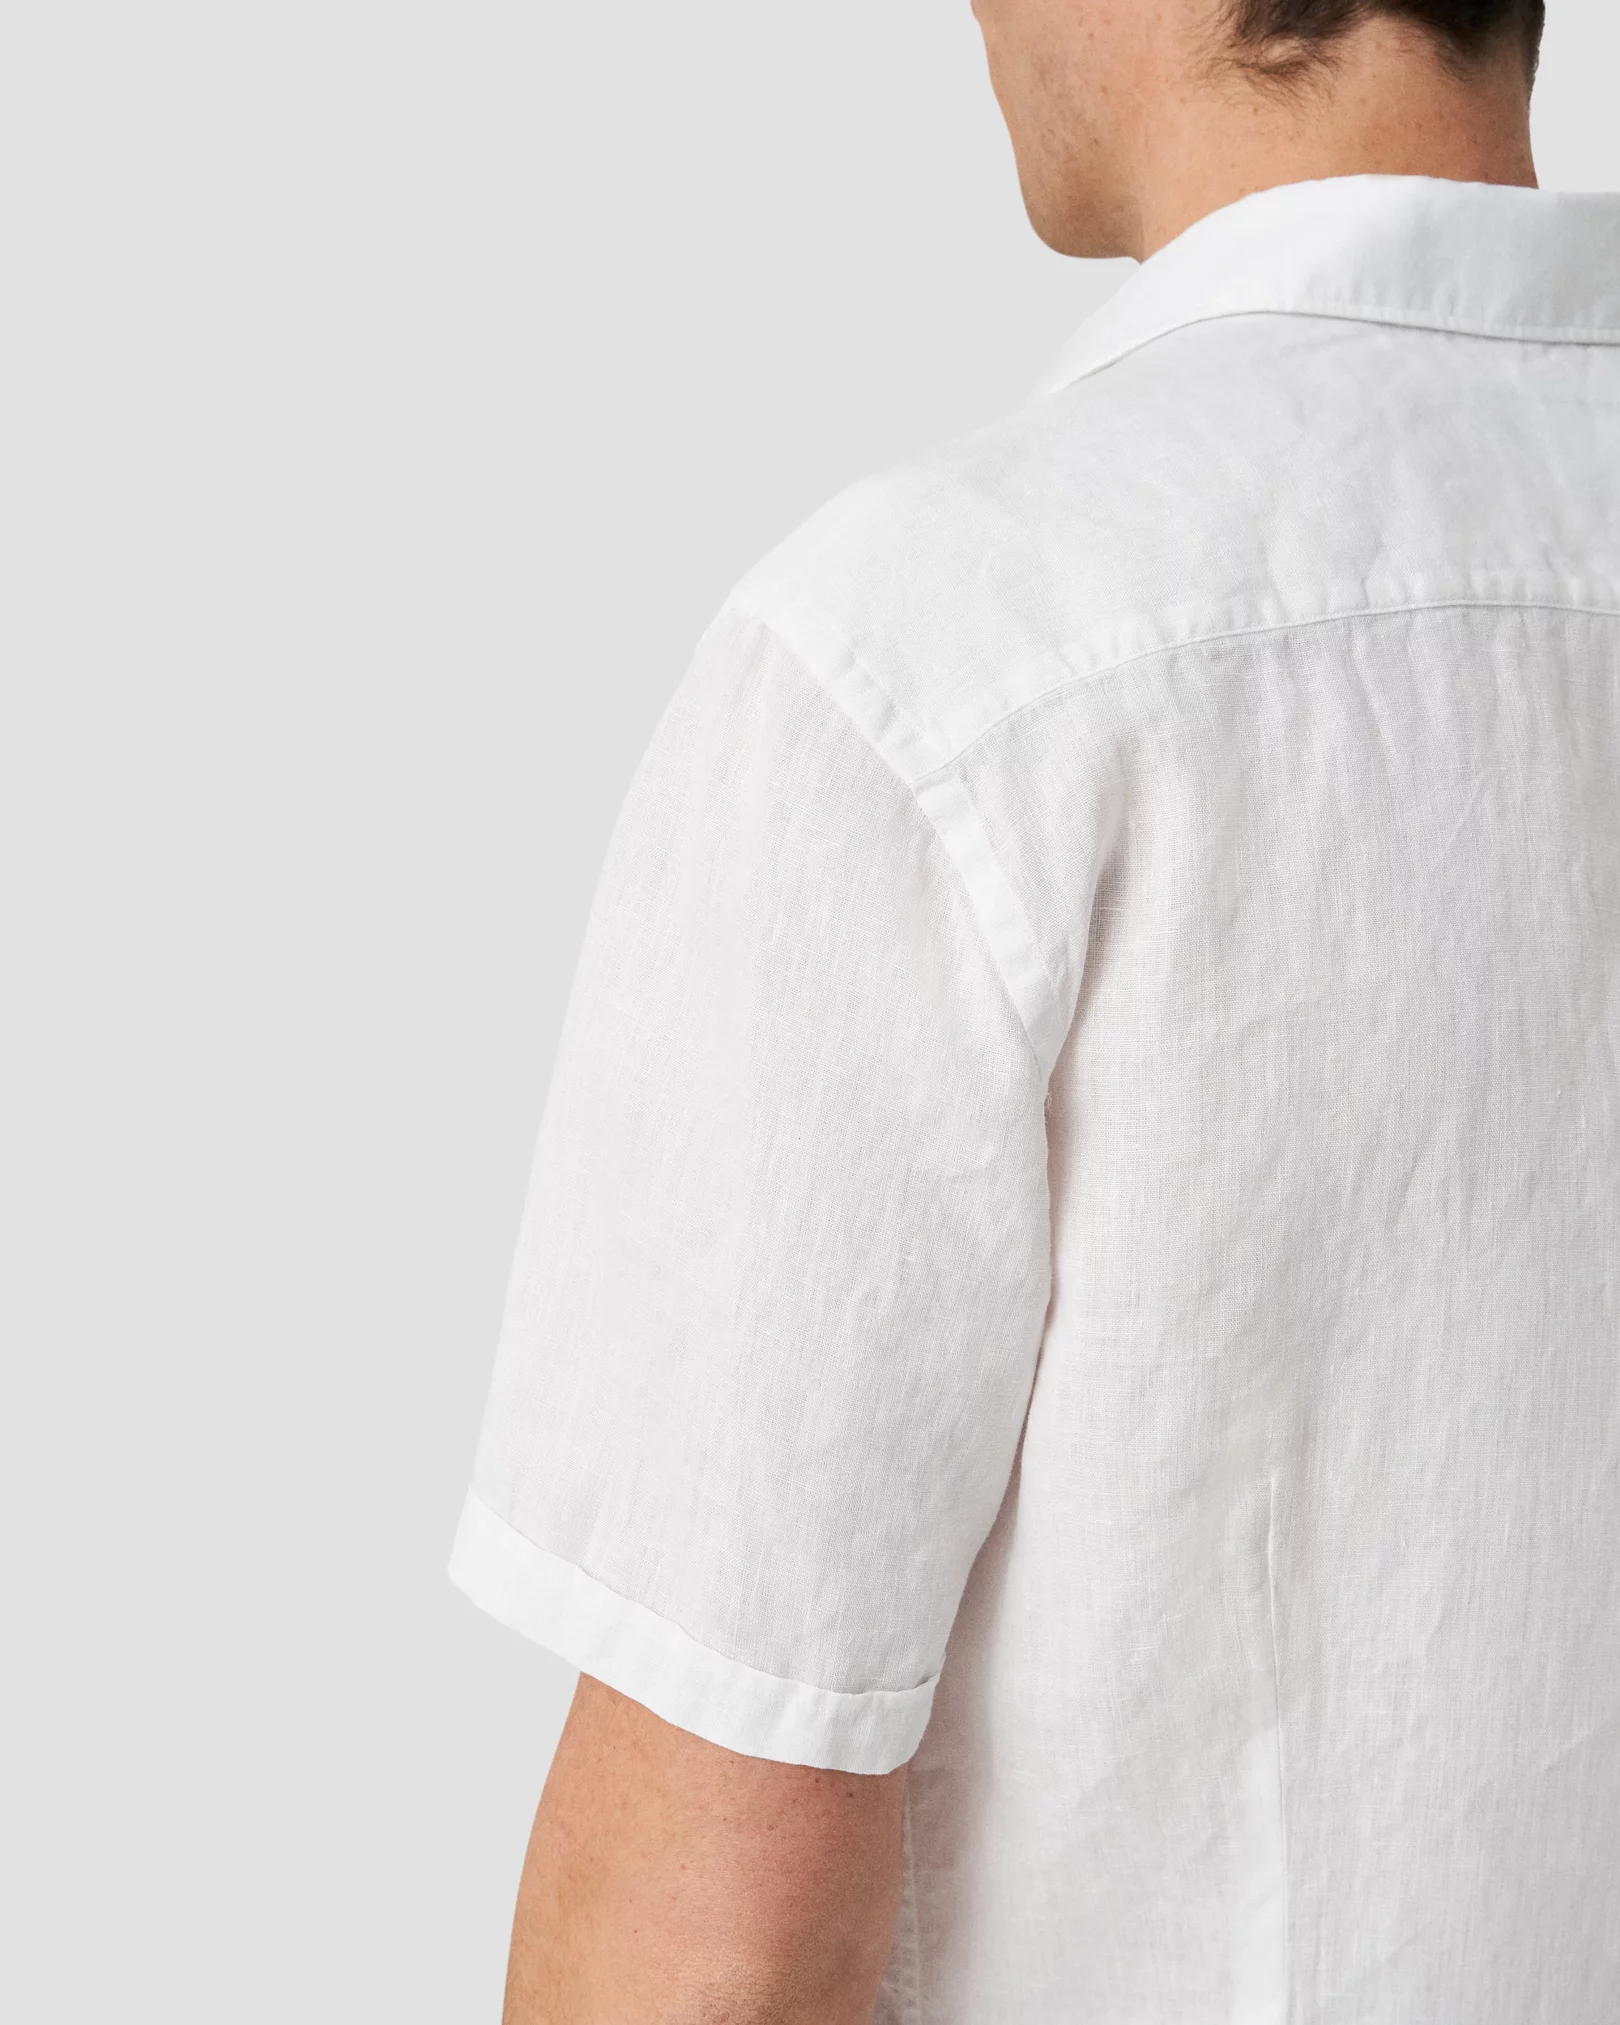 Men's Short sleeve Linen Shirts